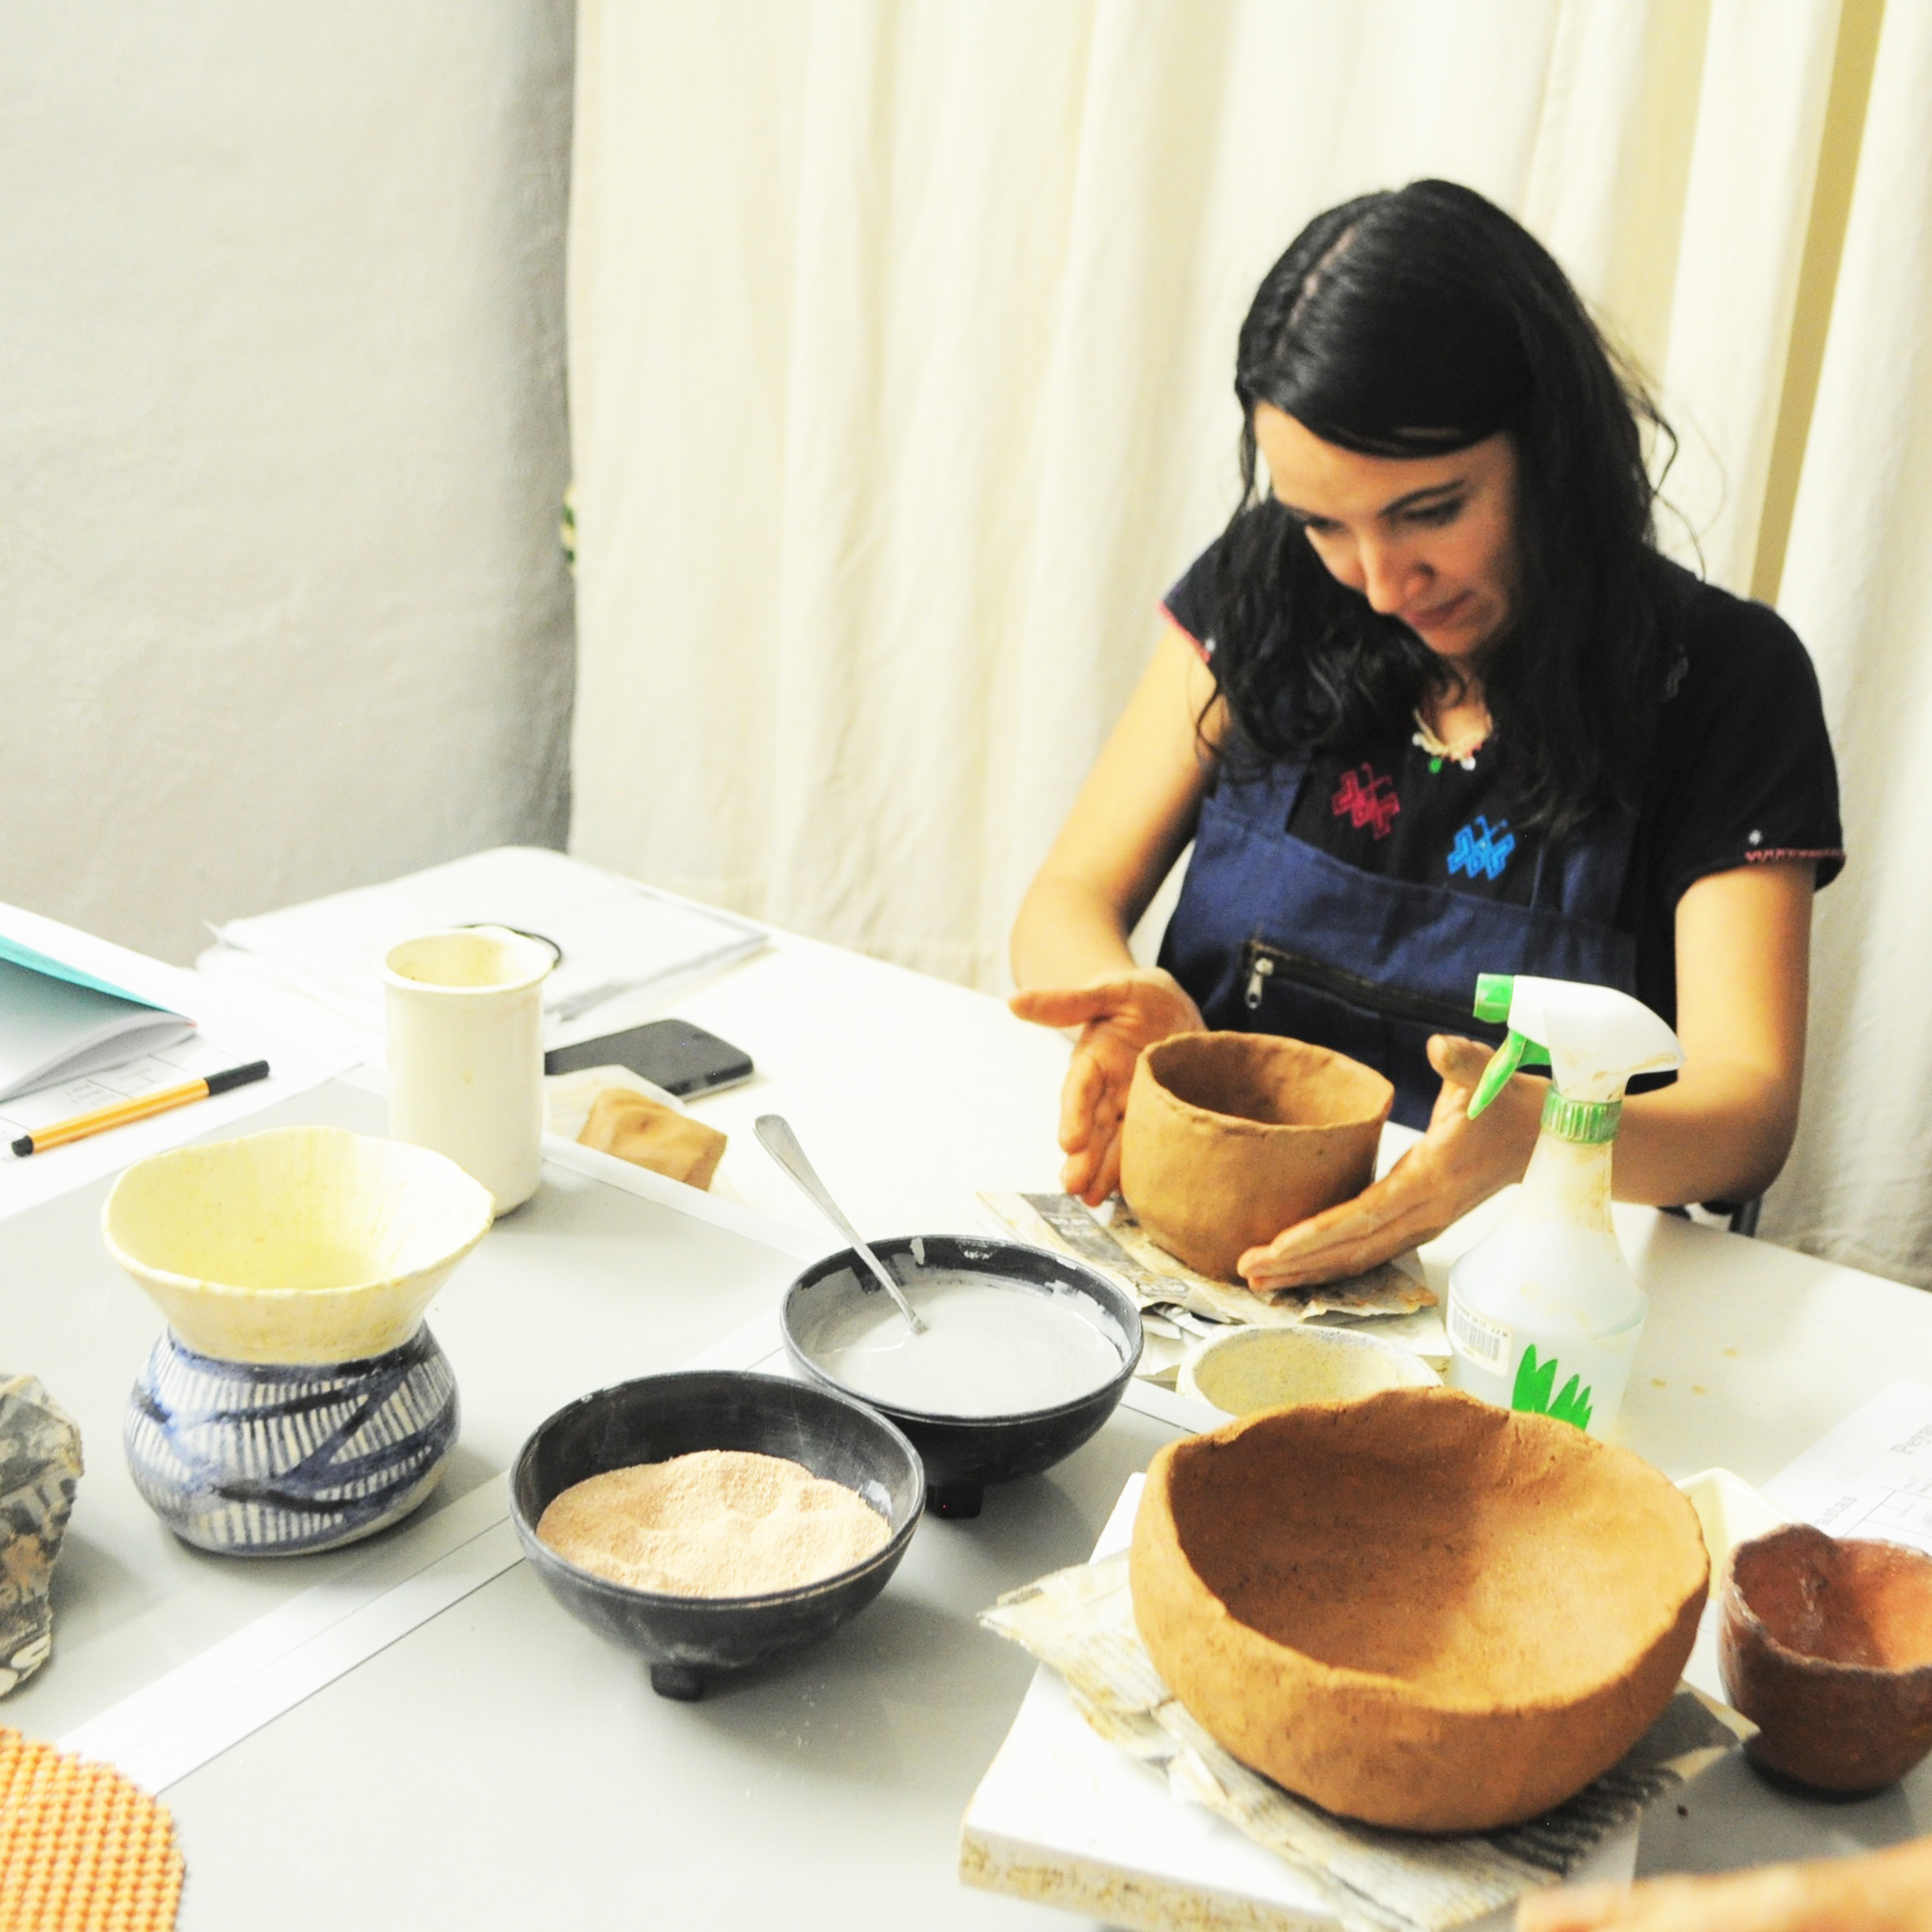 Introducción a la cerámica